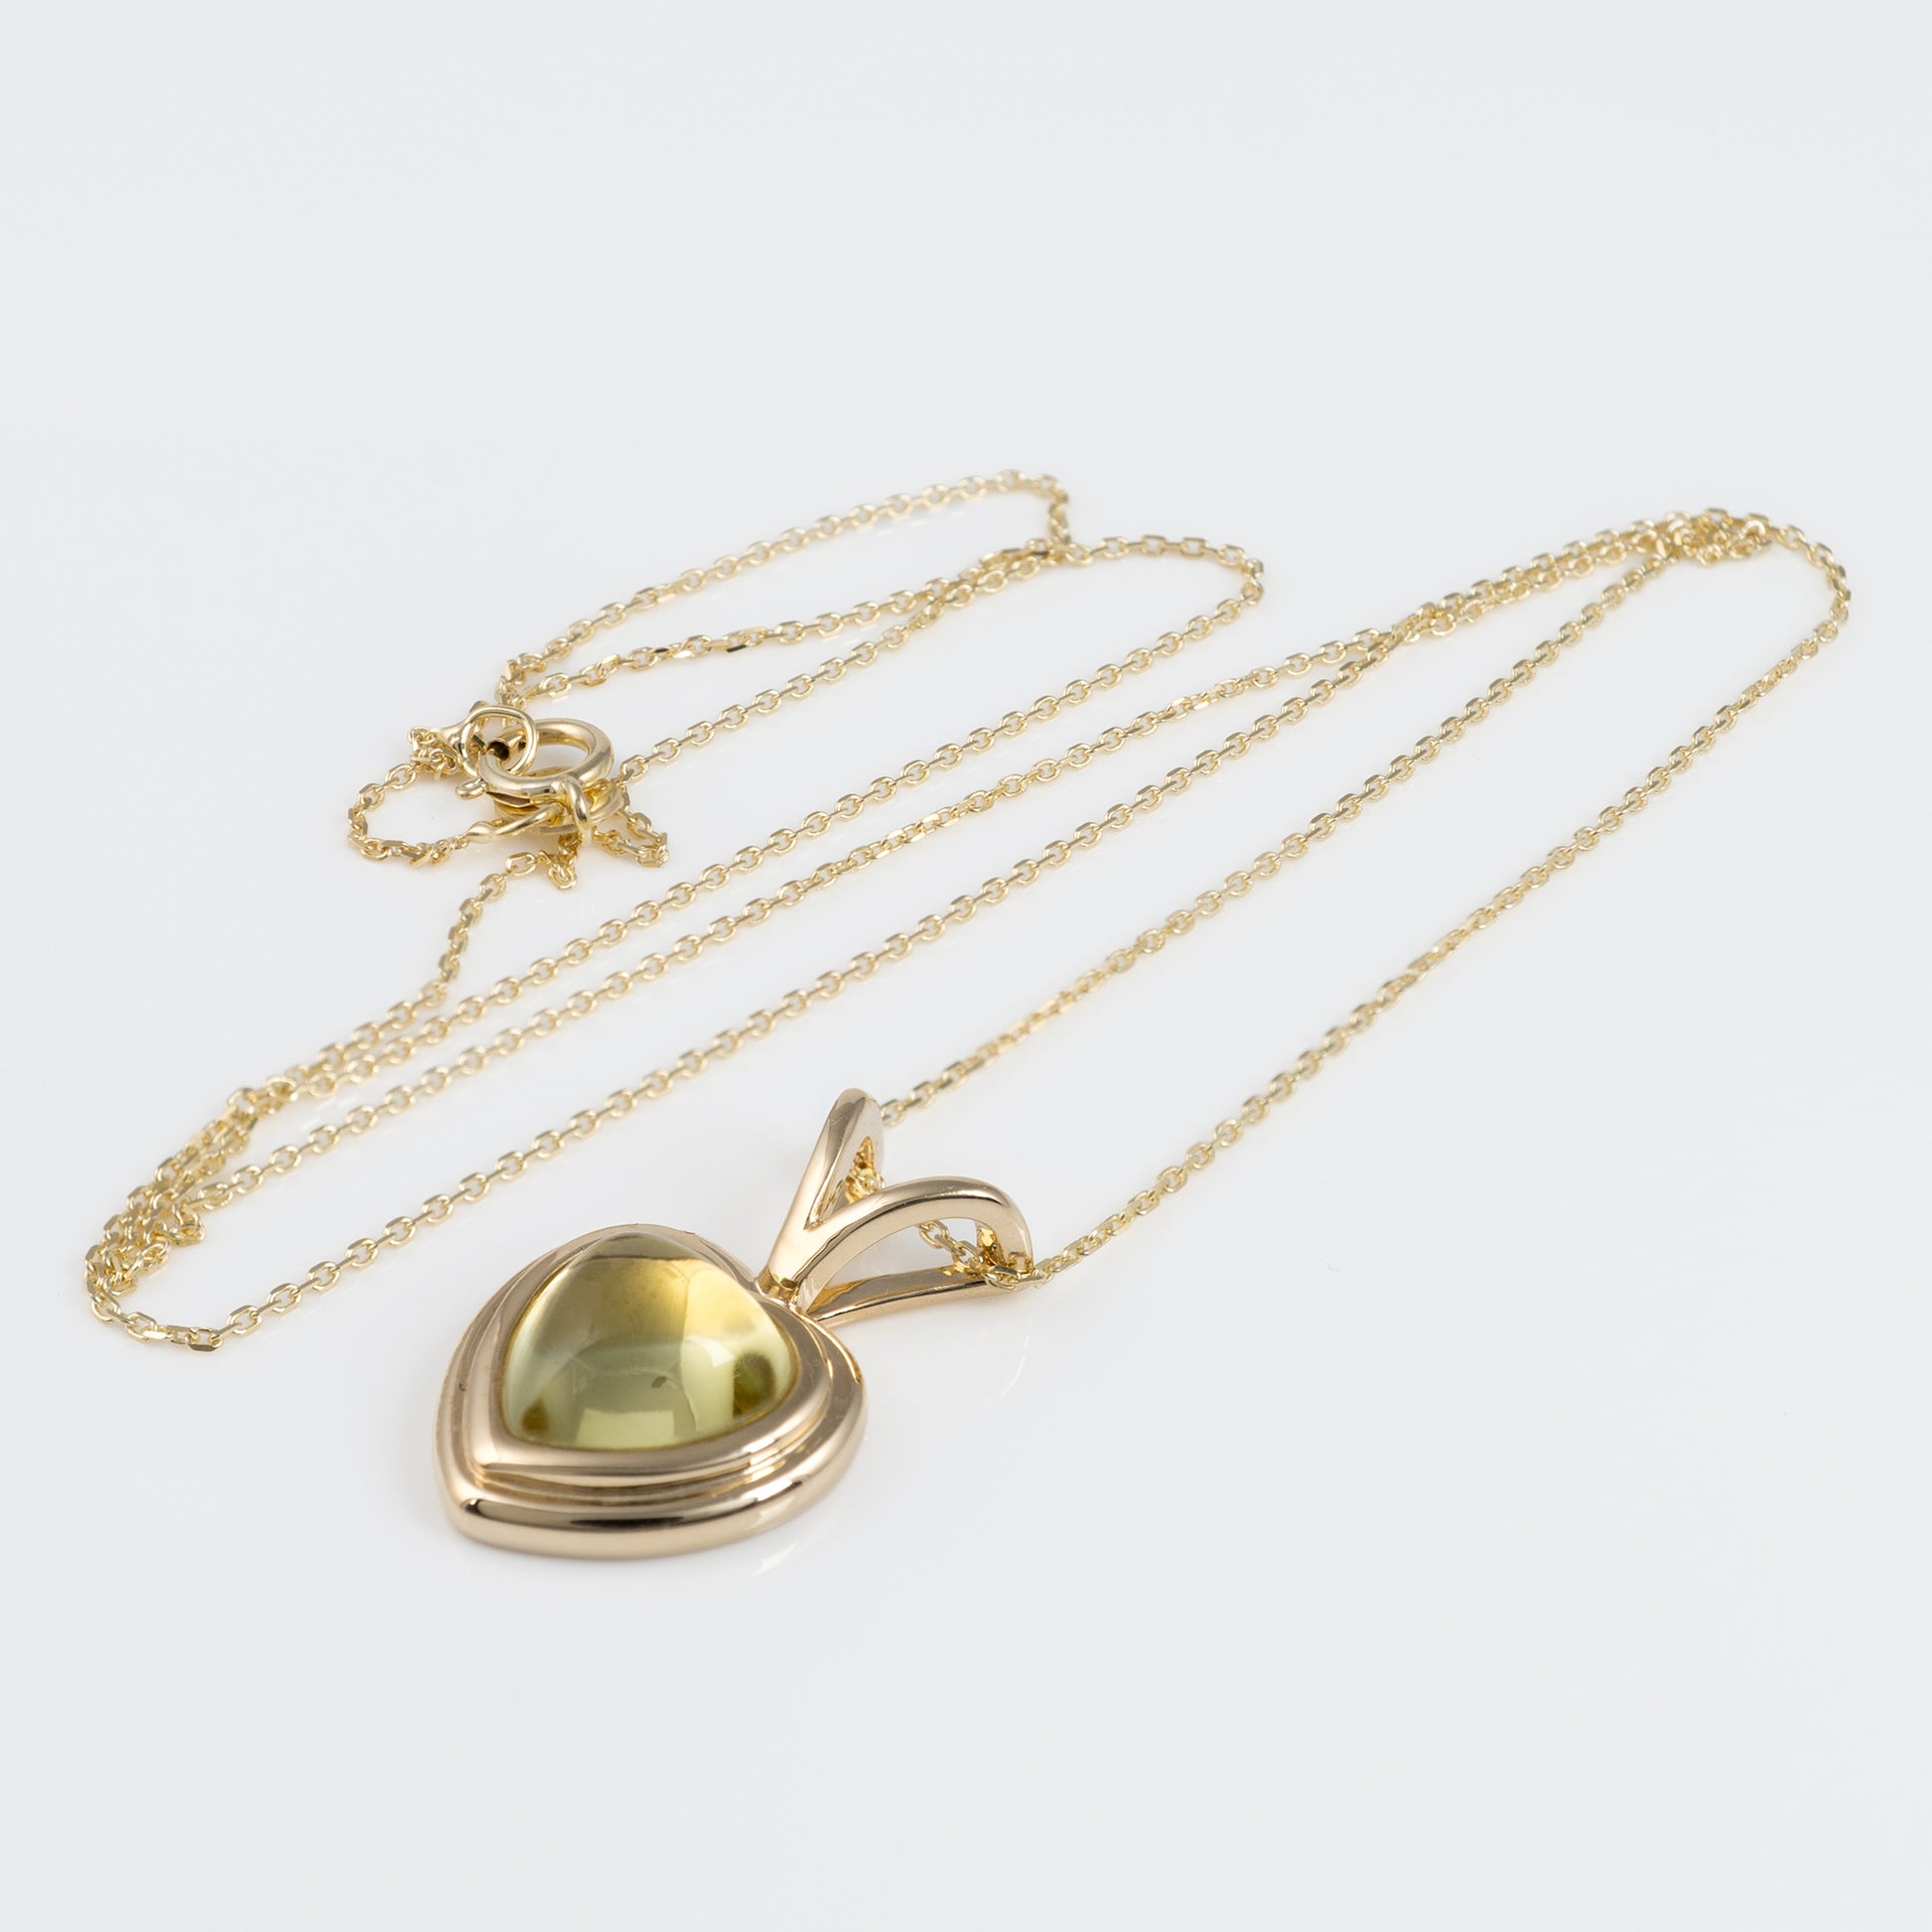 lemon quartz necklace v bail with belcher chain 